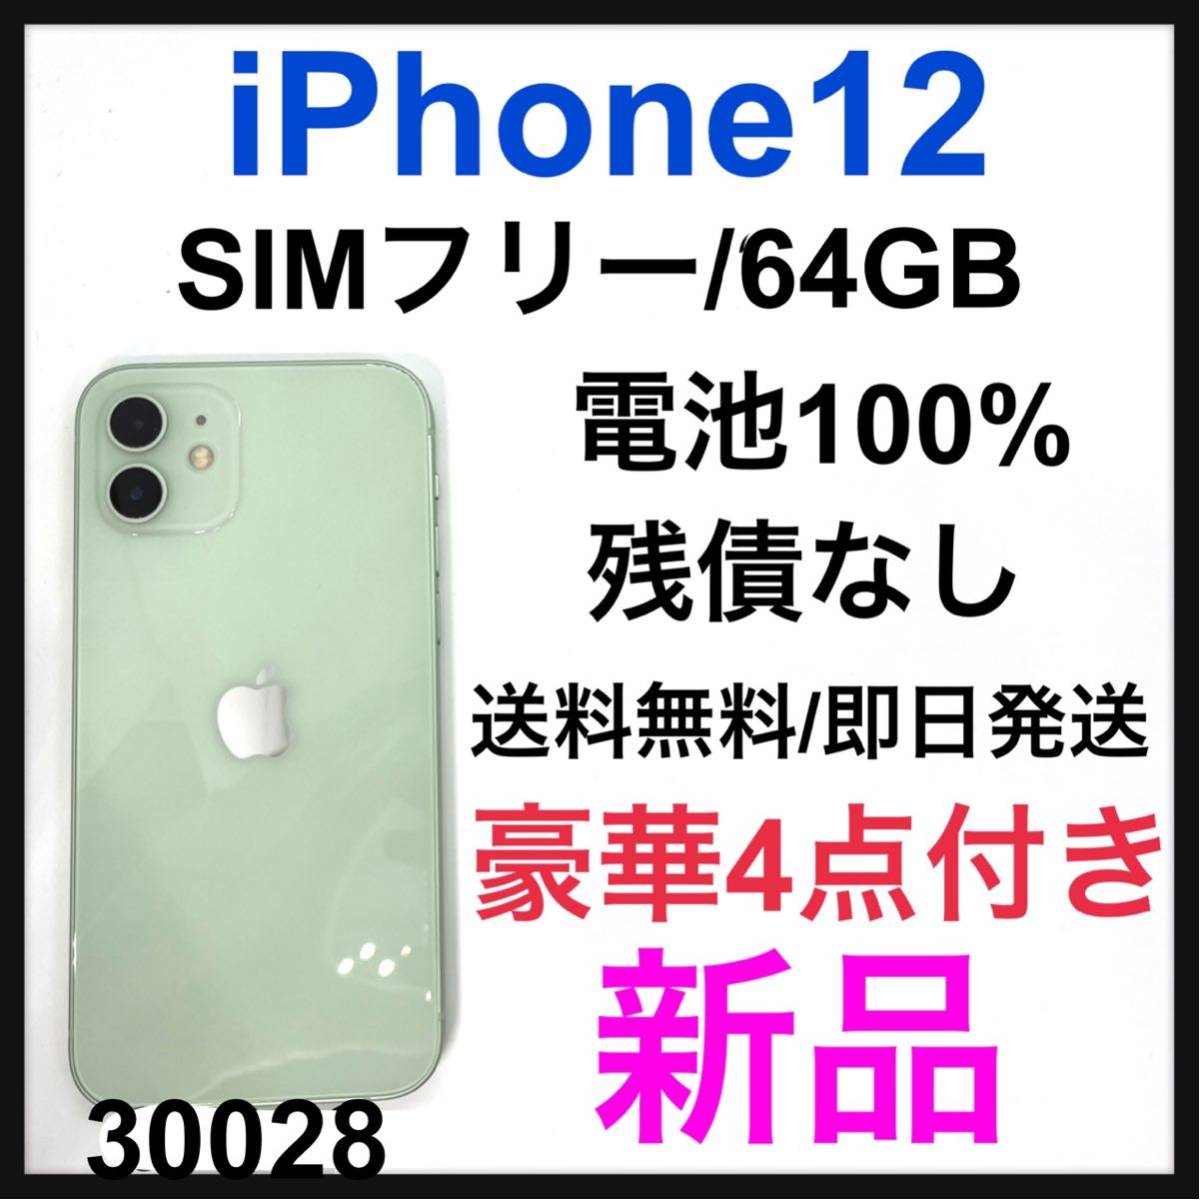 24800円 【気質アップ】 iPhone11 64GB SIMフリー 強化ガラスコーティング済